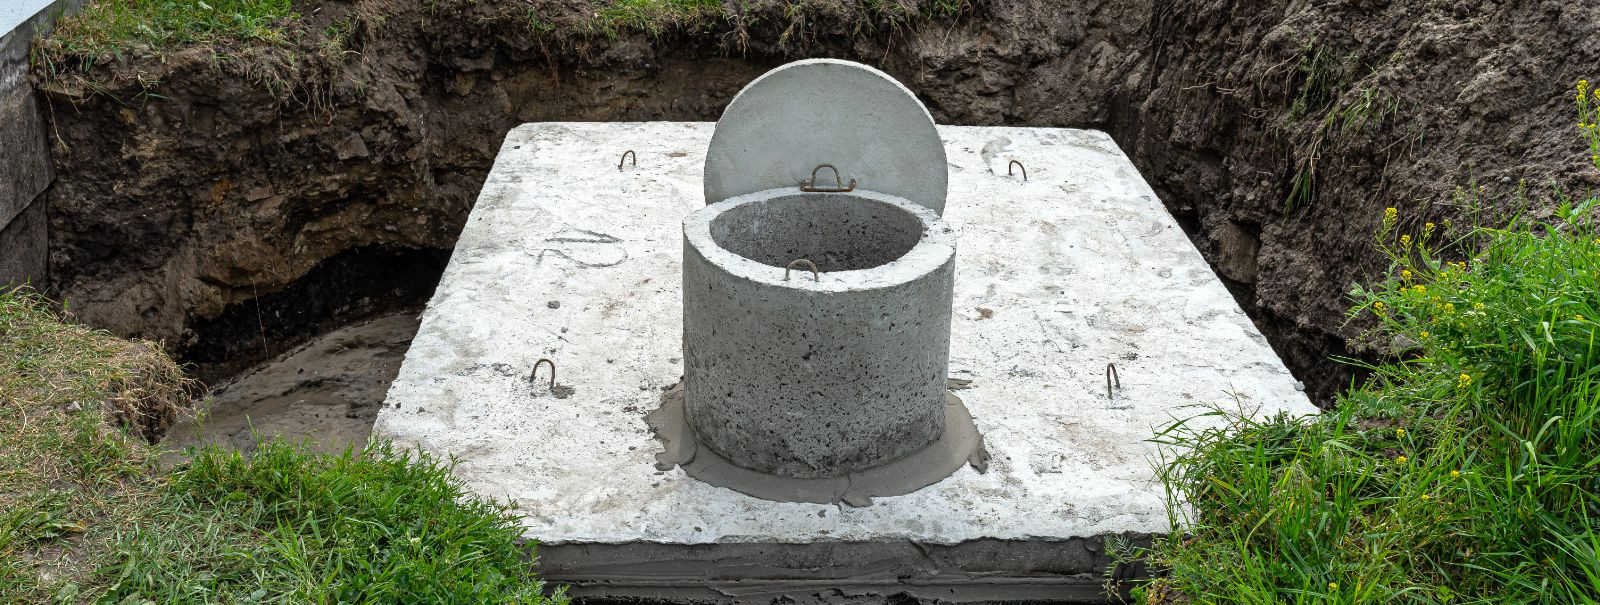 Septikusüsteem on maa-alune reoveepuhastusstruktuur, mida kasutatakse tavaliselt tsentraliseeritud kanalisatsioonisüsteemideta maapiirkondades. See kasutab lood